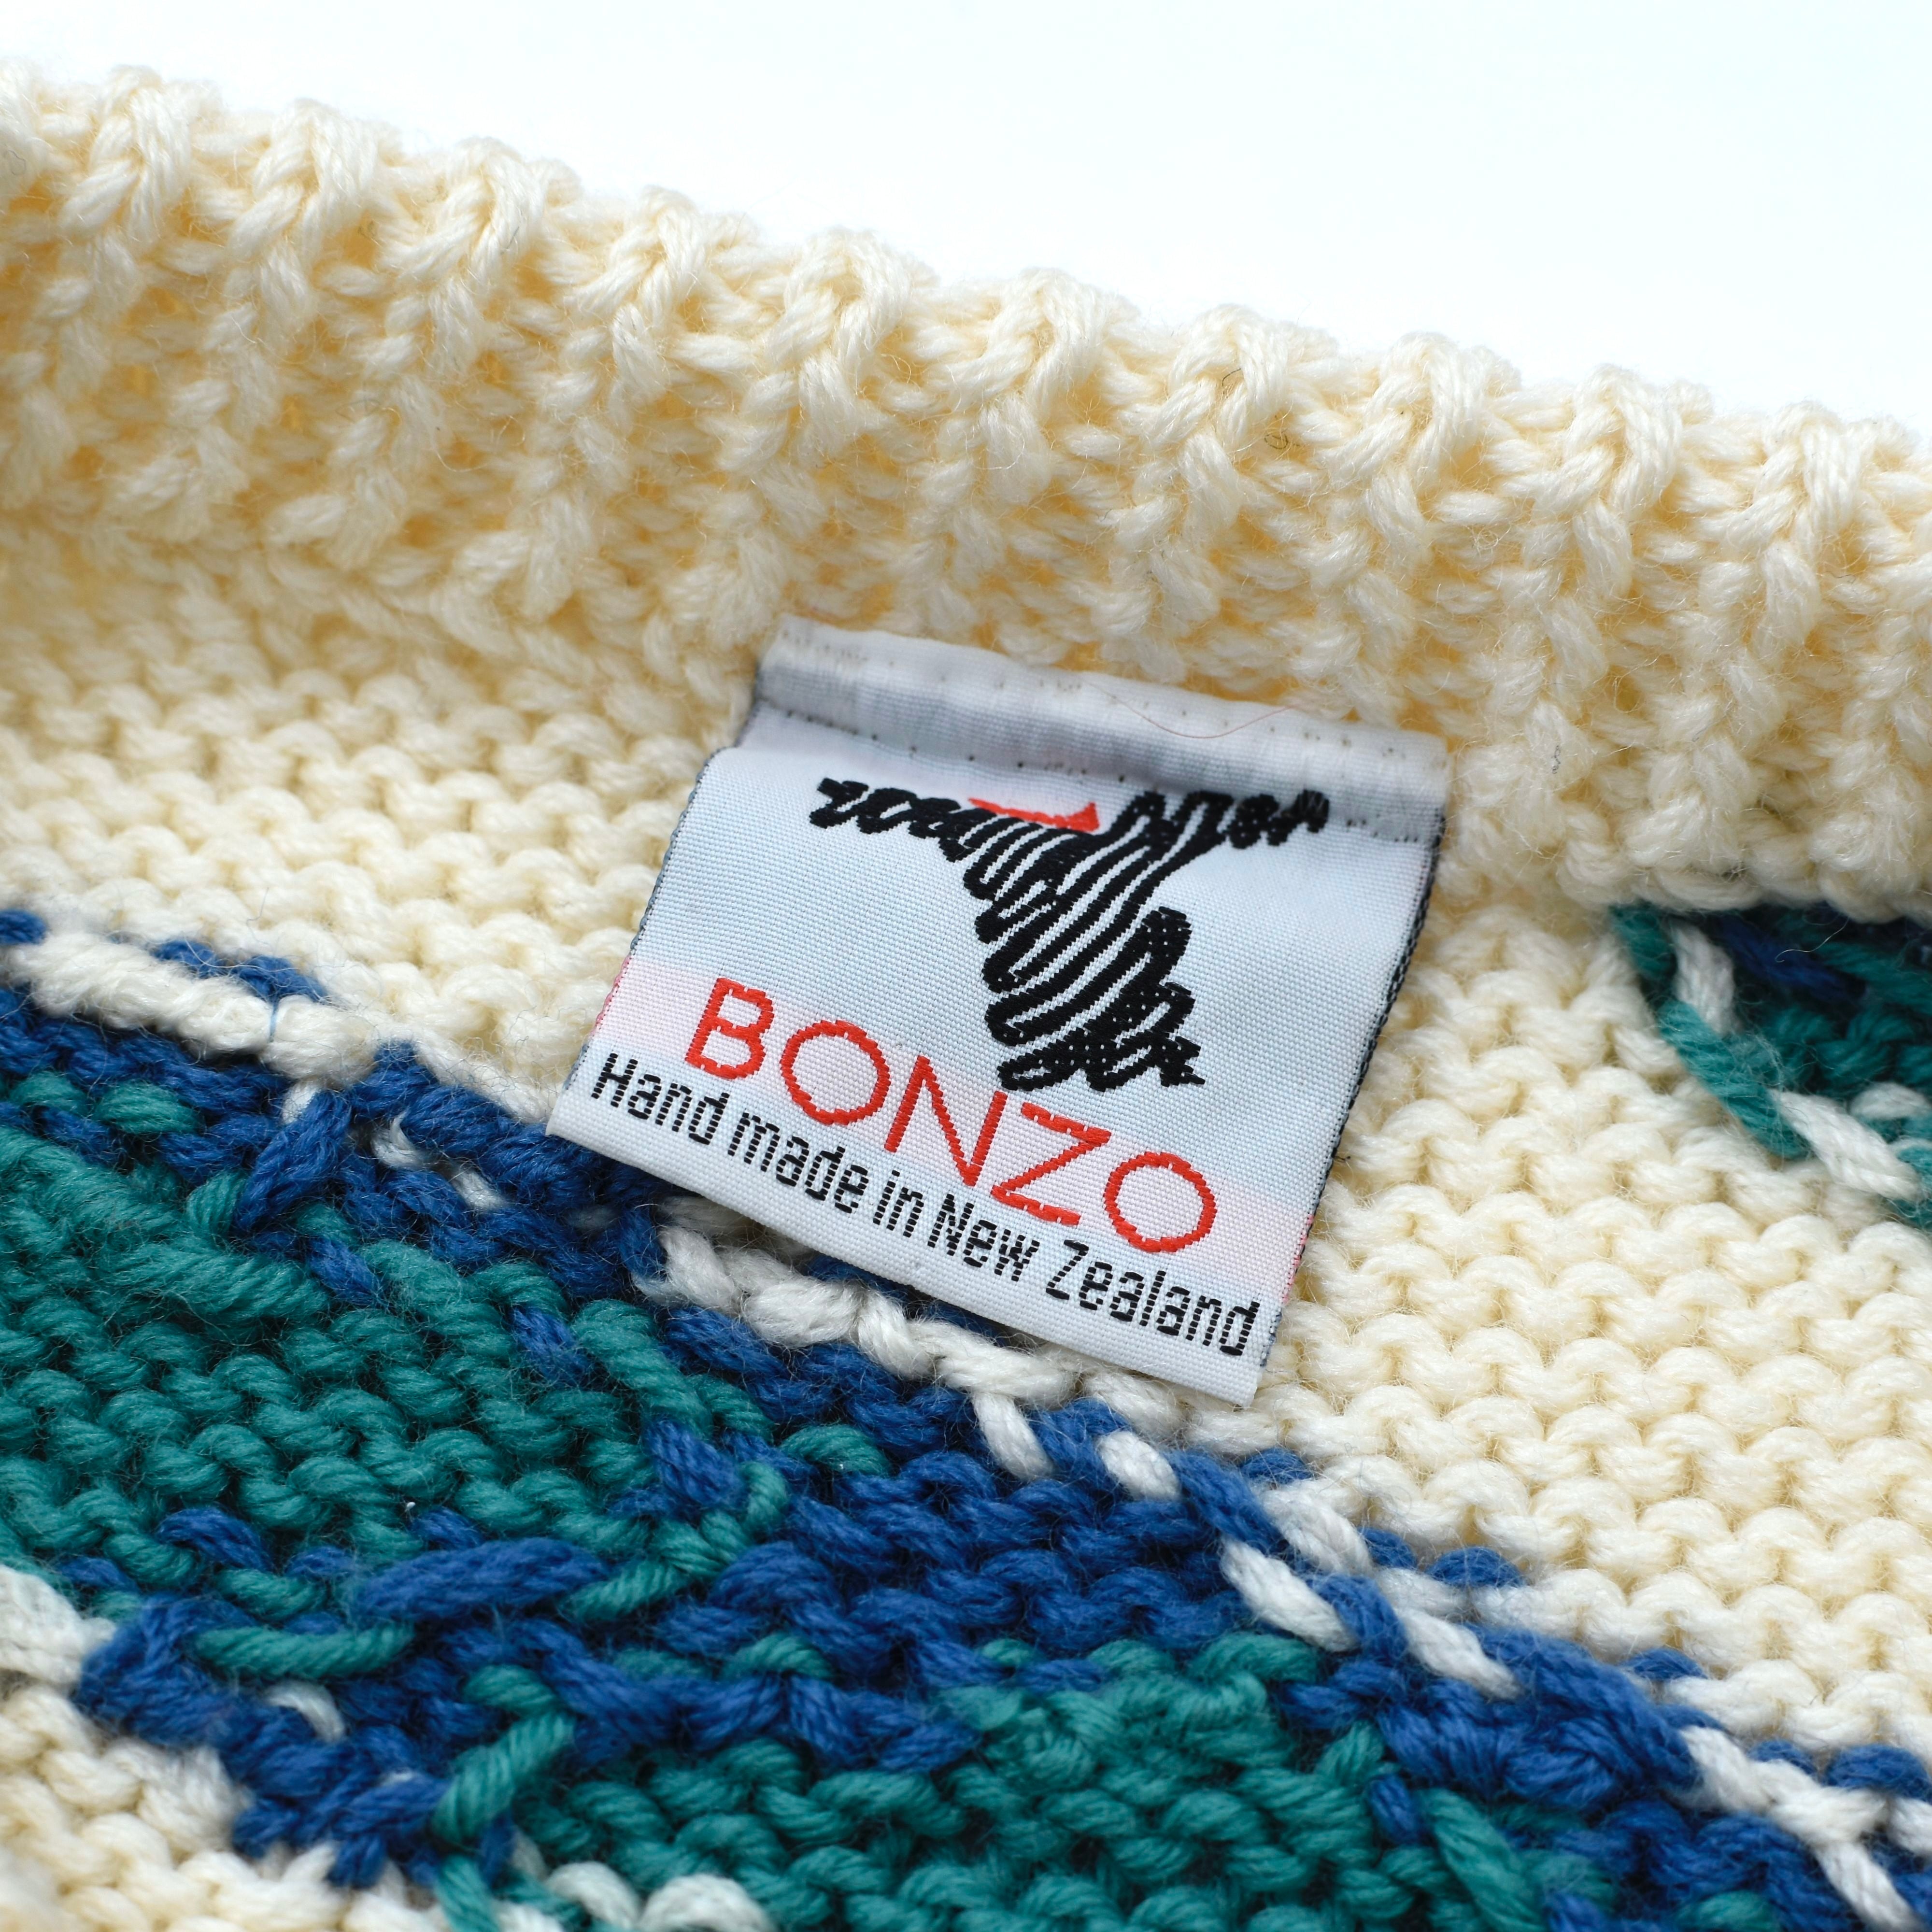 bonzo ニット セーター 肉厚 ハンドニット コアラ 総柄 大きいサイズ L